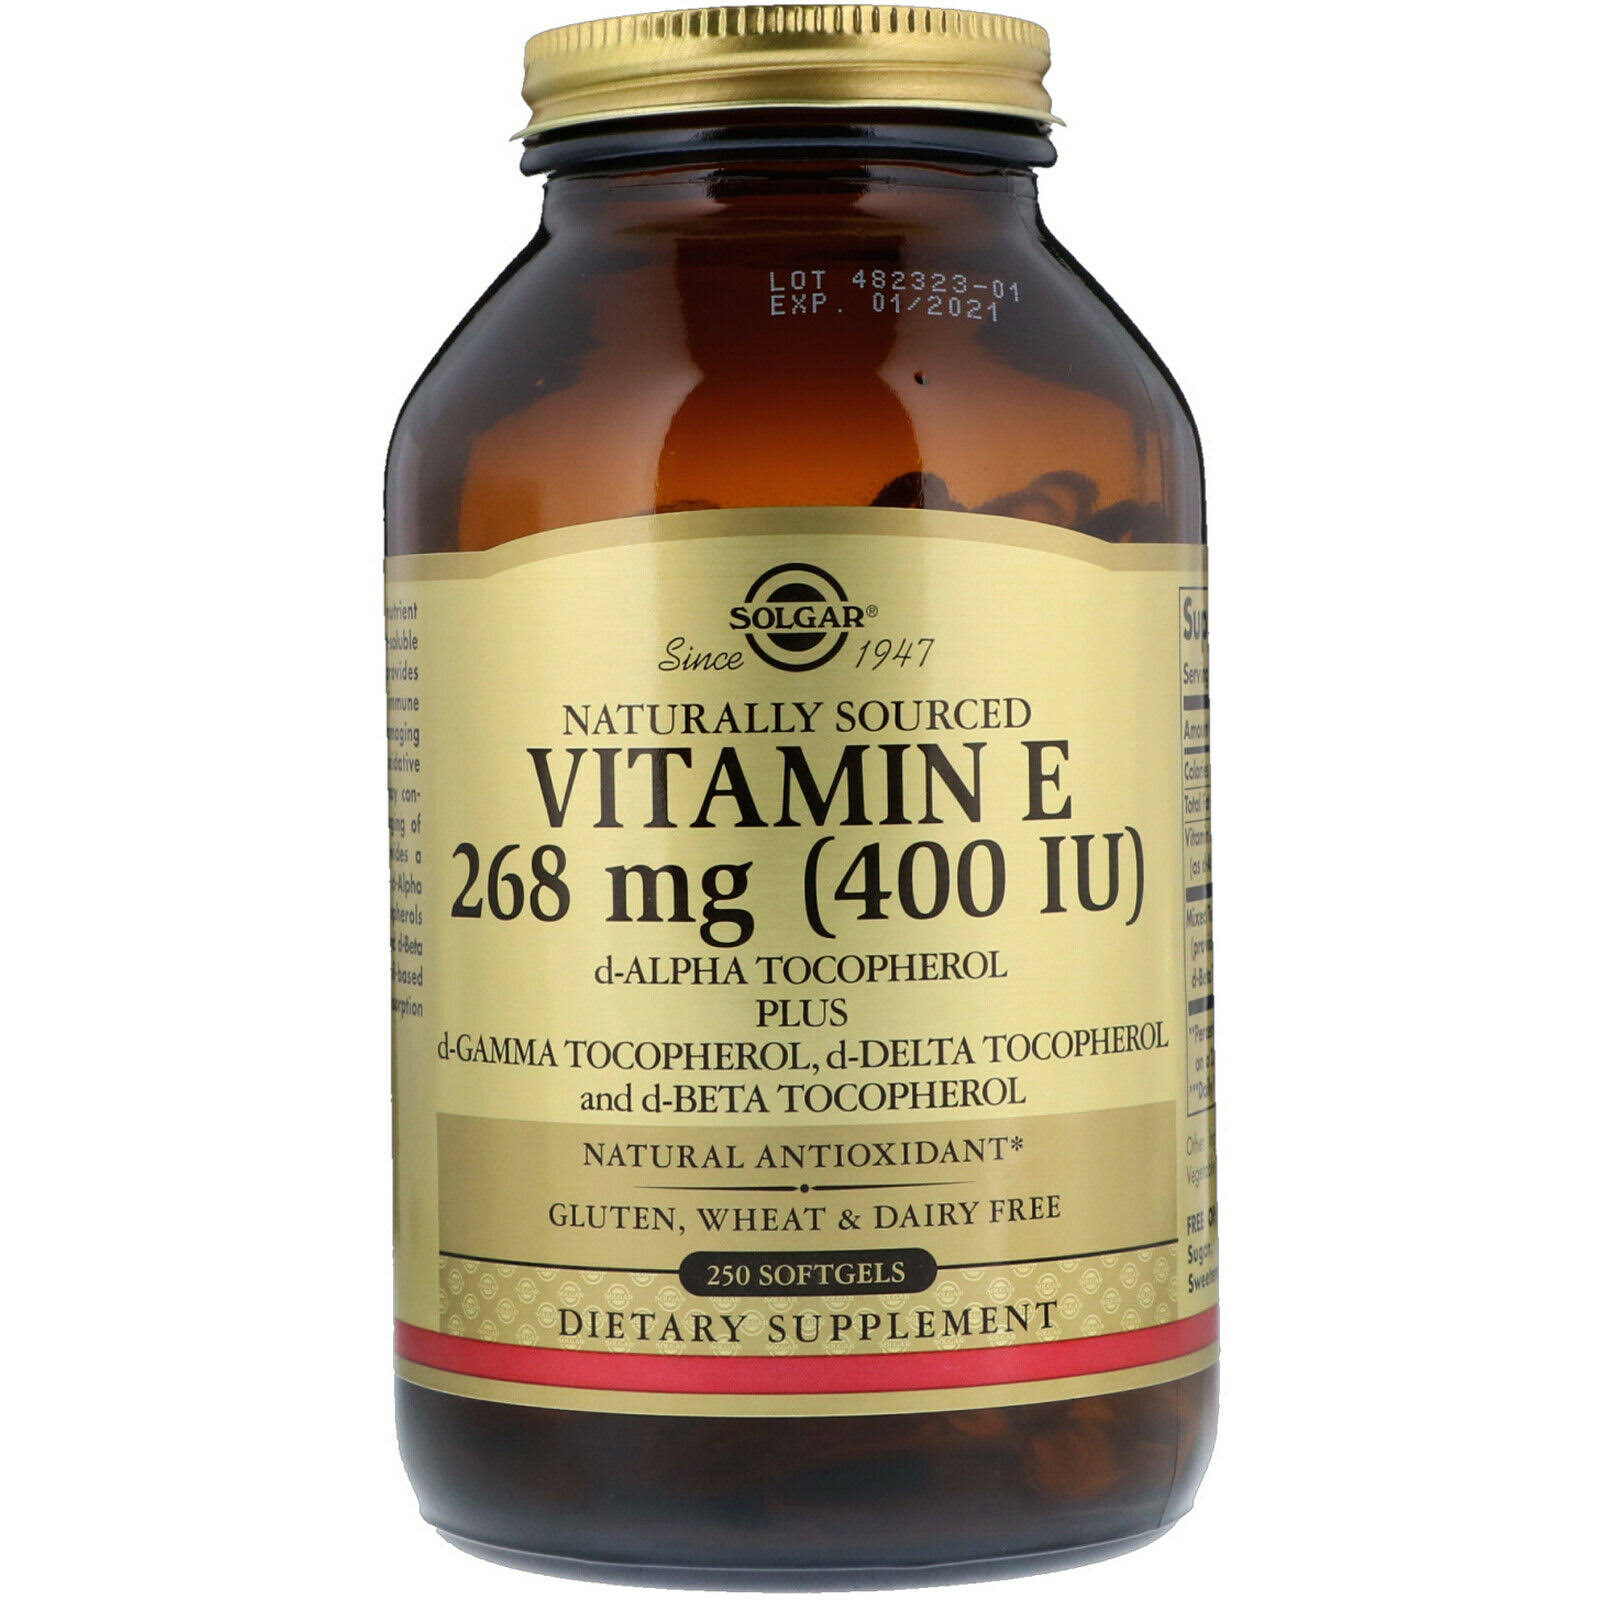 Solgar Vitamin E 400 IU Natural Antioxidant Supplement - 250 Softgels